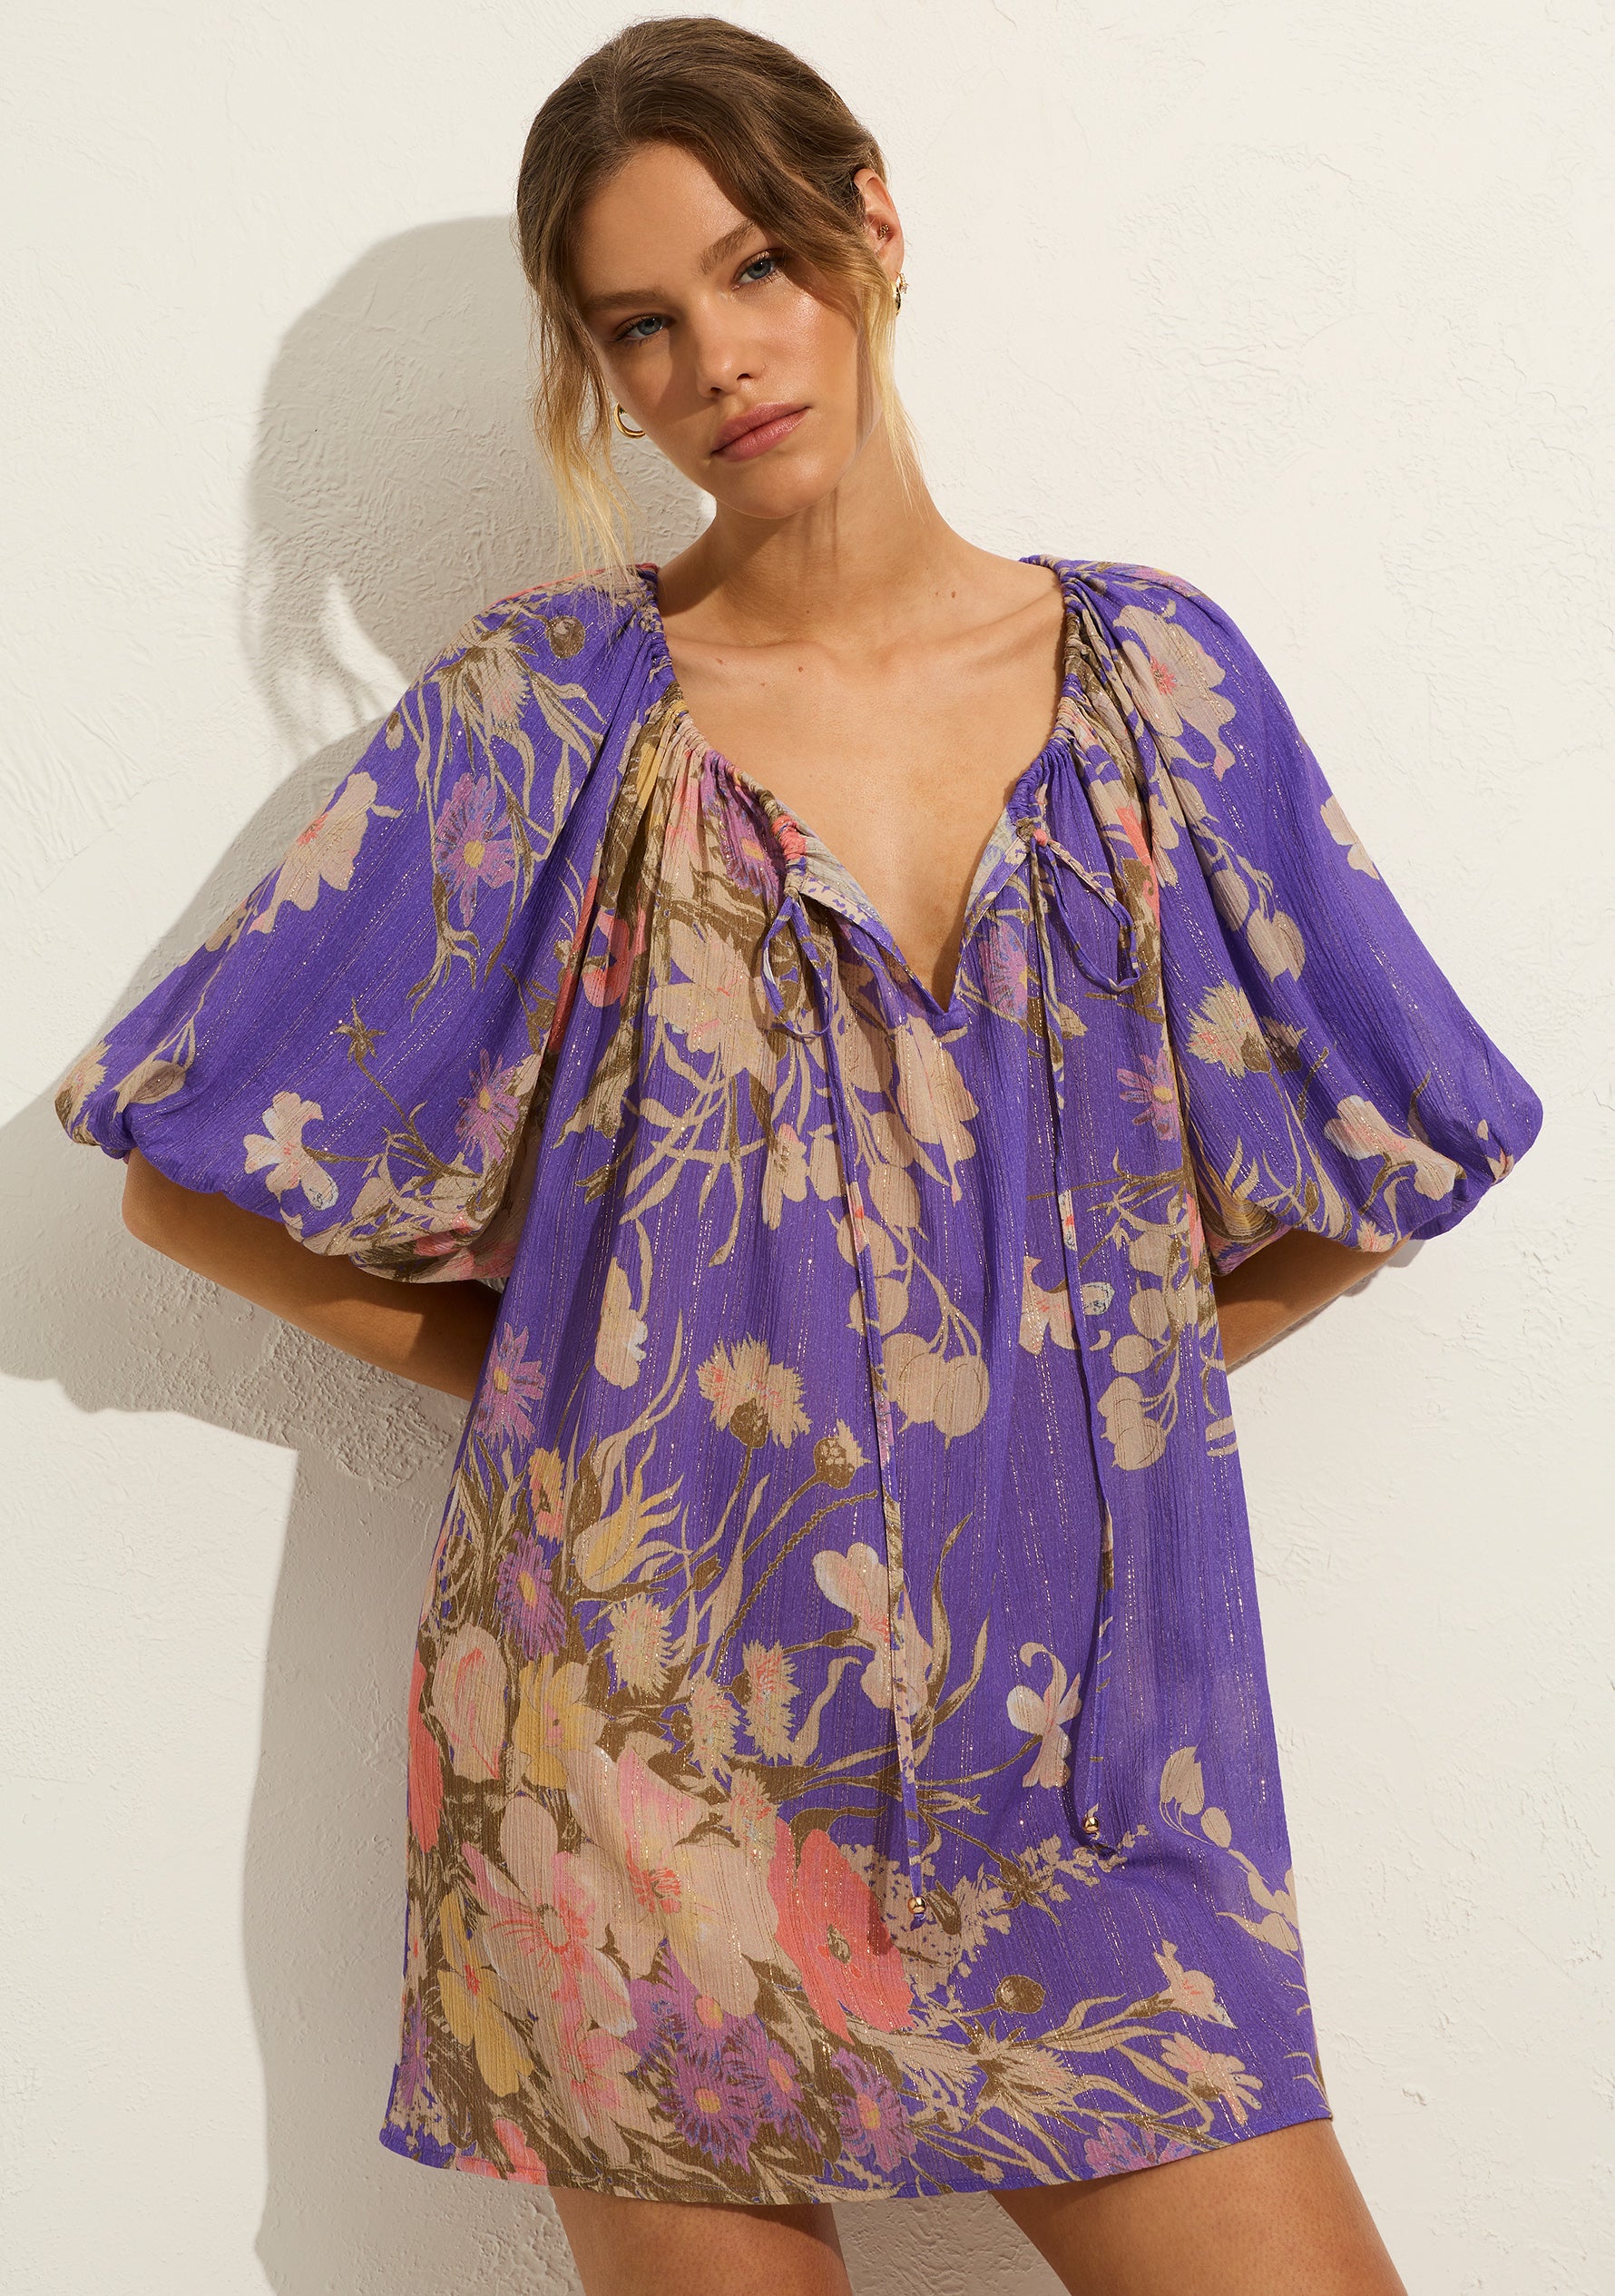 Auguste The Label | Cora Mini Dress - Lavender